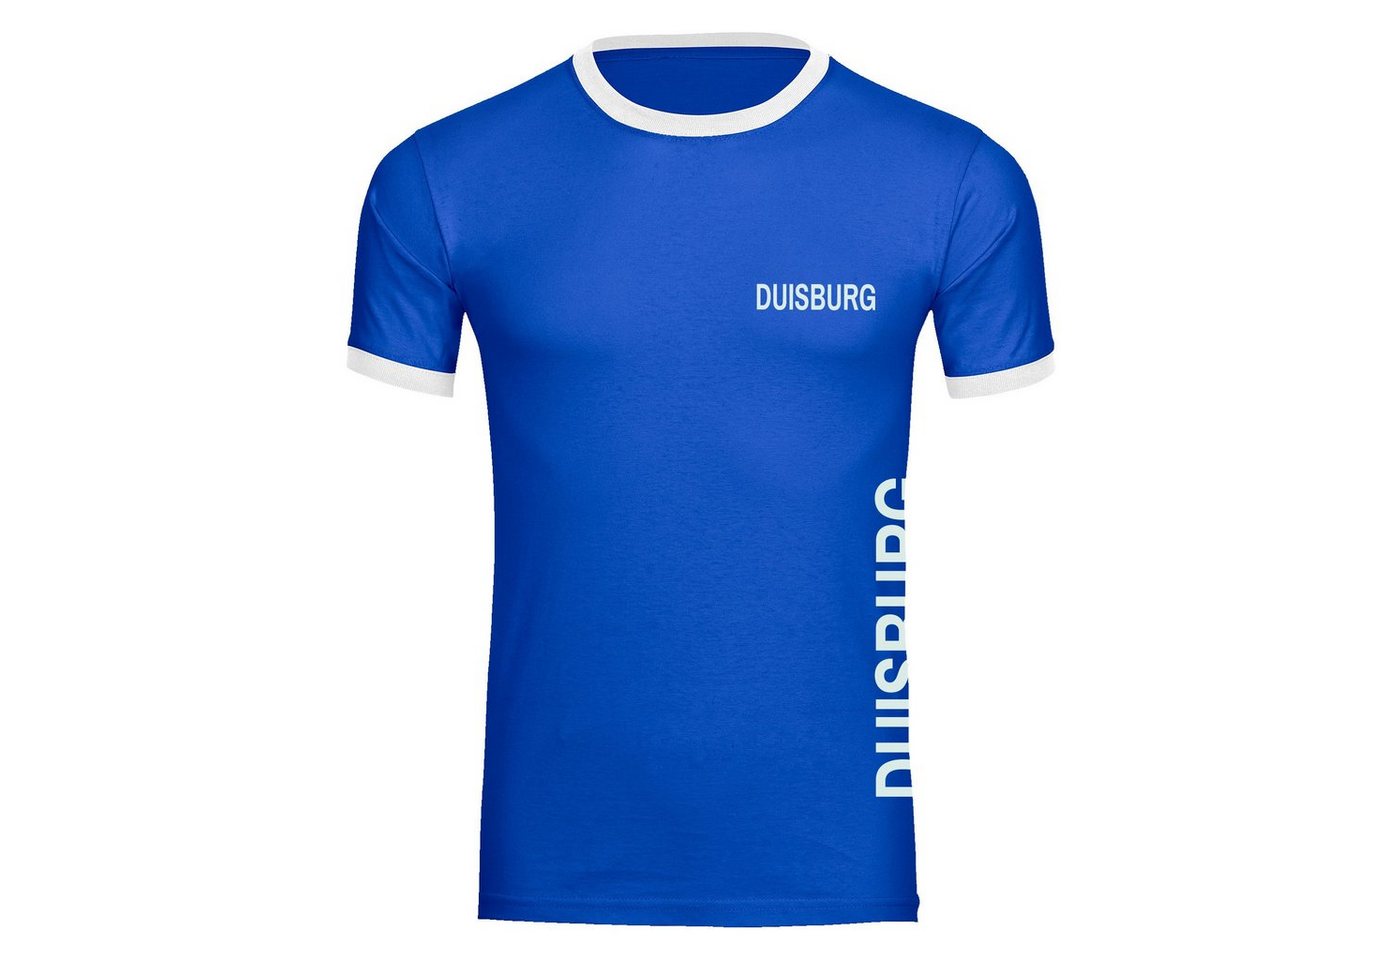 multifanshop T-Shirt Kontrast Duisburg - Brust & Seite - Männer von multifanshop